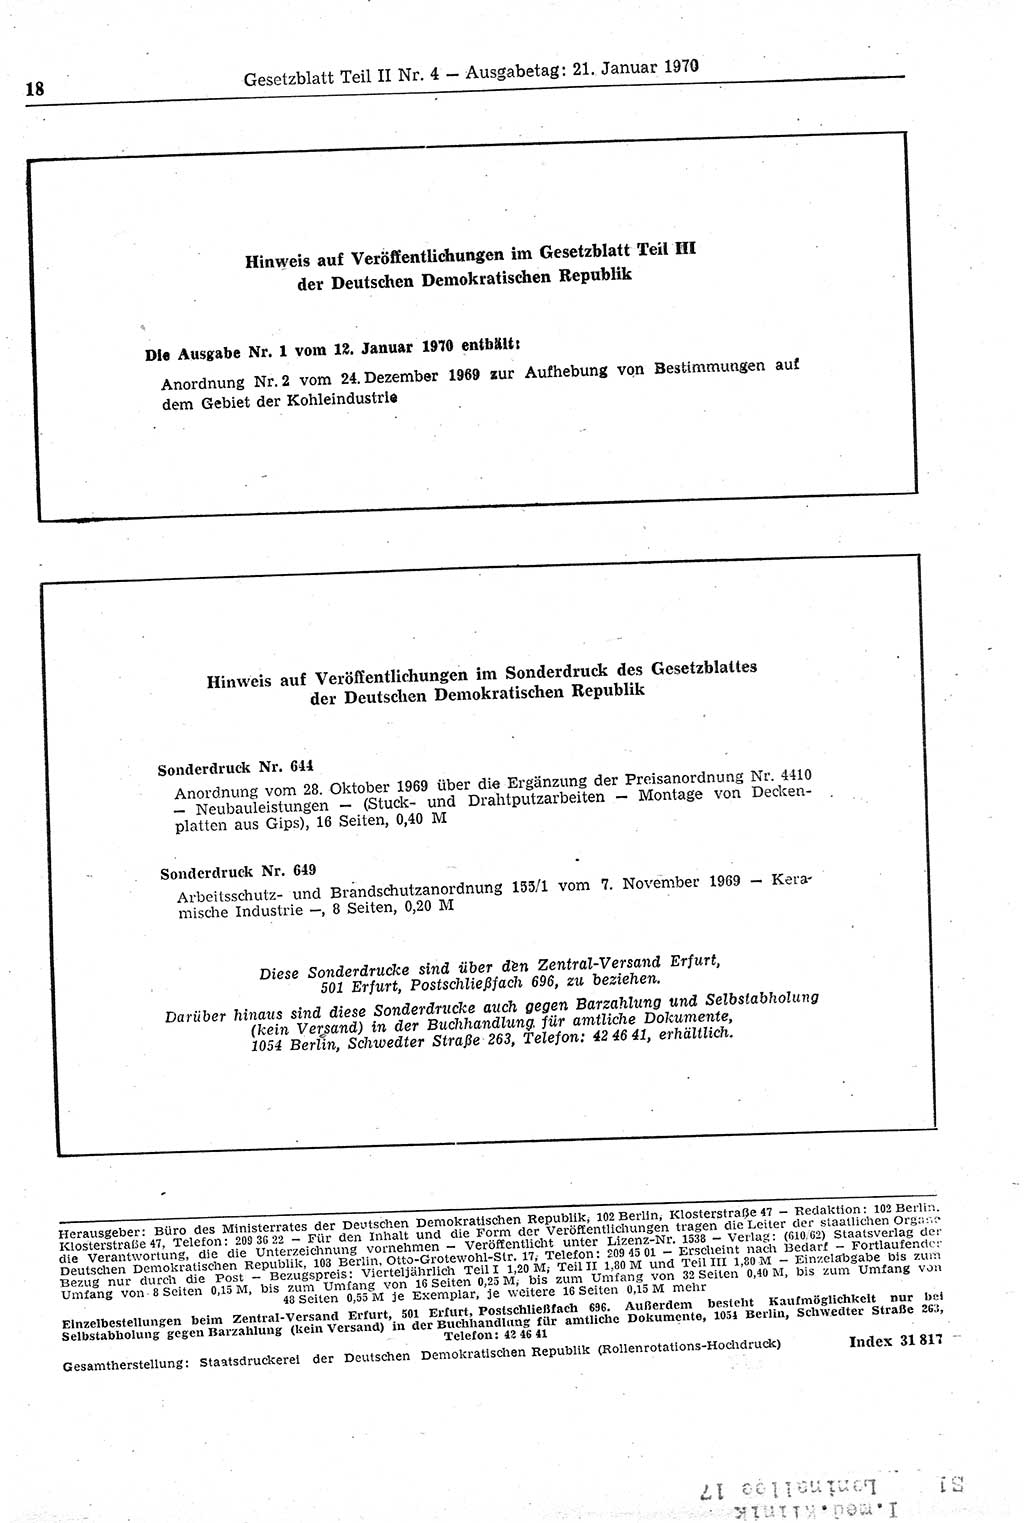 Gesetzblatt (GBl.) der Deutschen Demokratischen Republik (DDR) Teil ⅠⅠ 1970, Seite 18 (GBl. DDR ⅠⅠ 1970, S. 18)